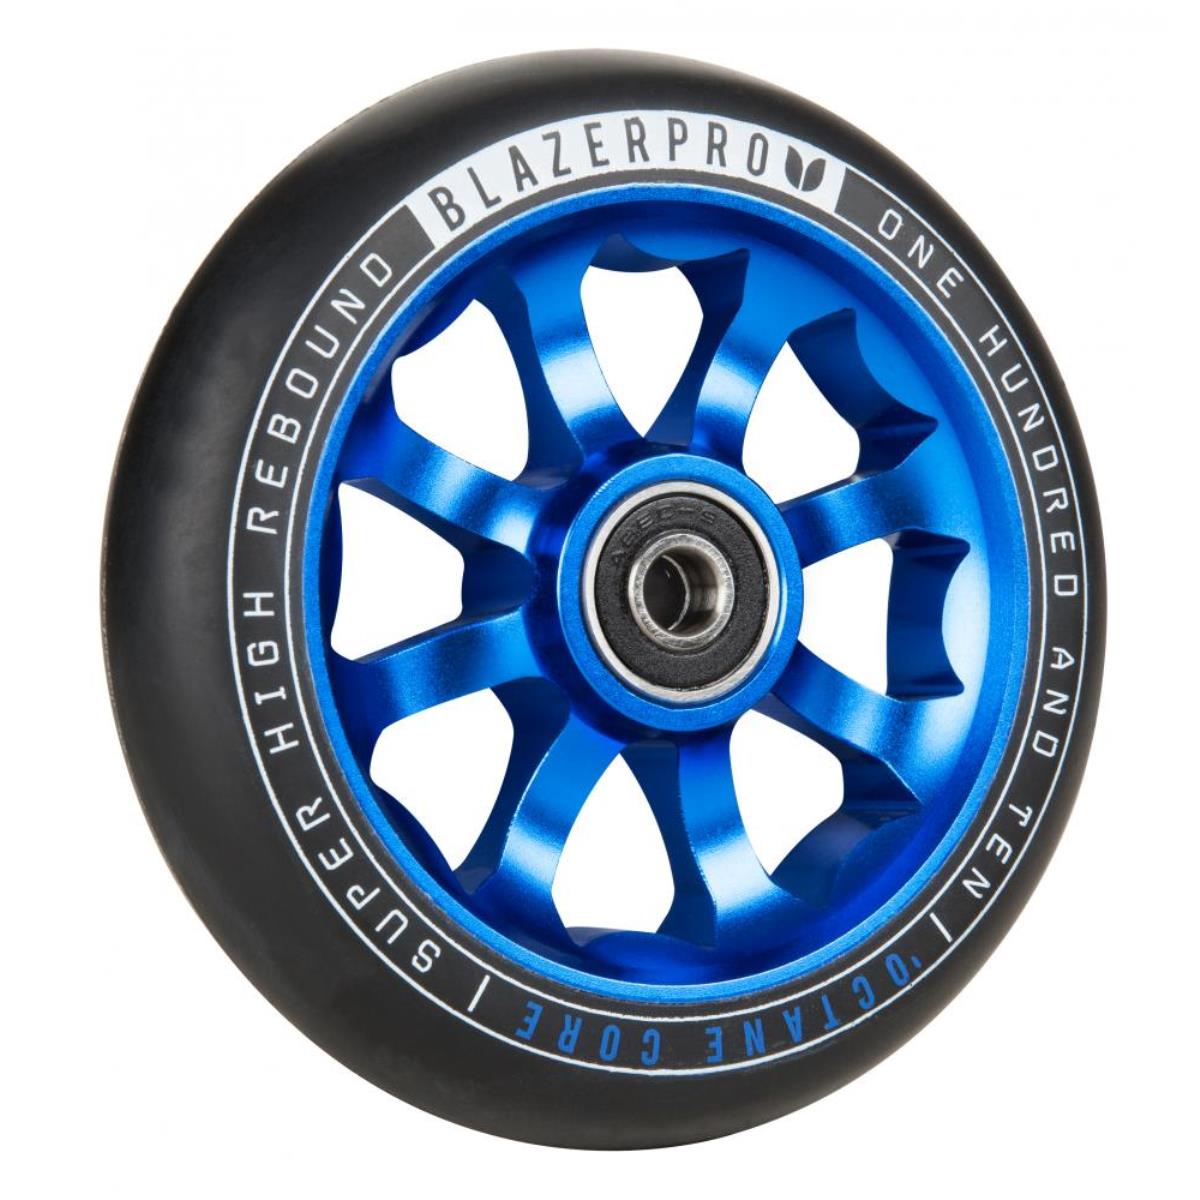 2X pro stunt scooter blue vortex metal core roues 110mm 88A abec 9 roulement 11 